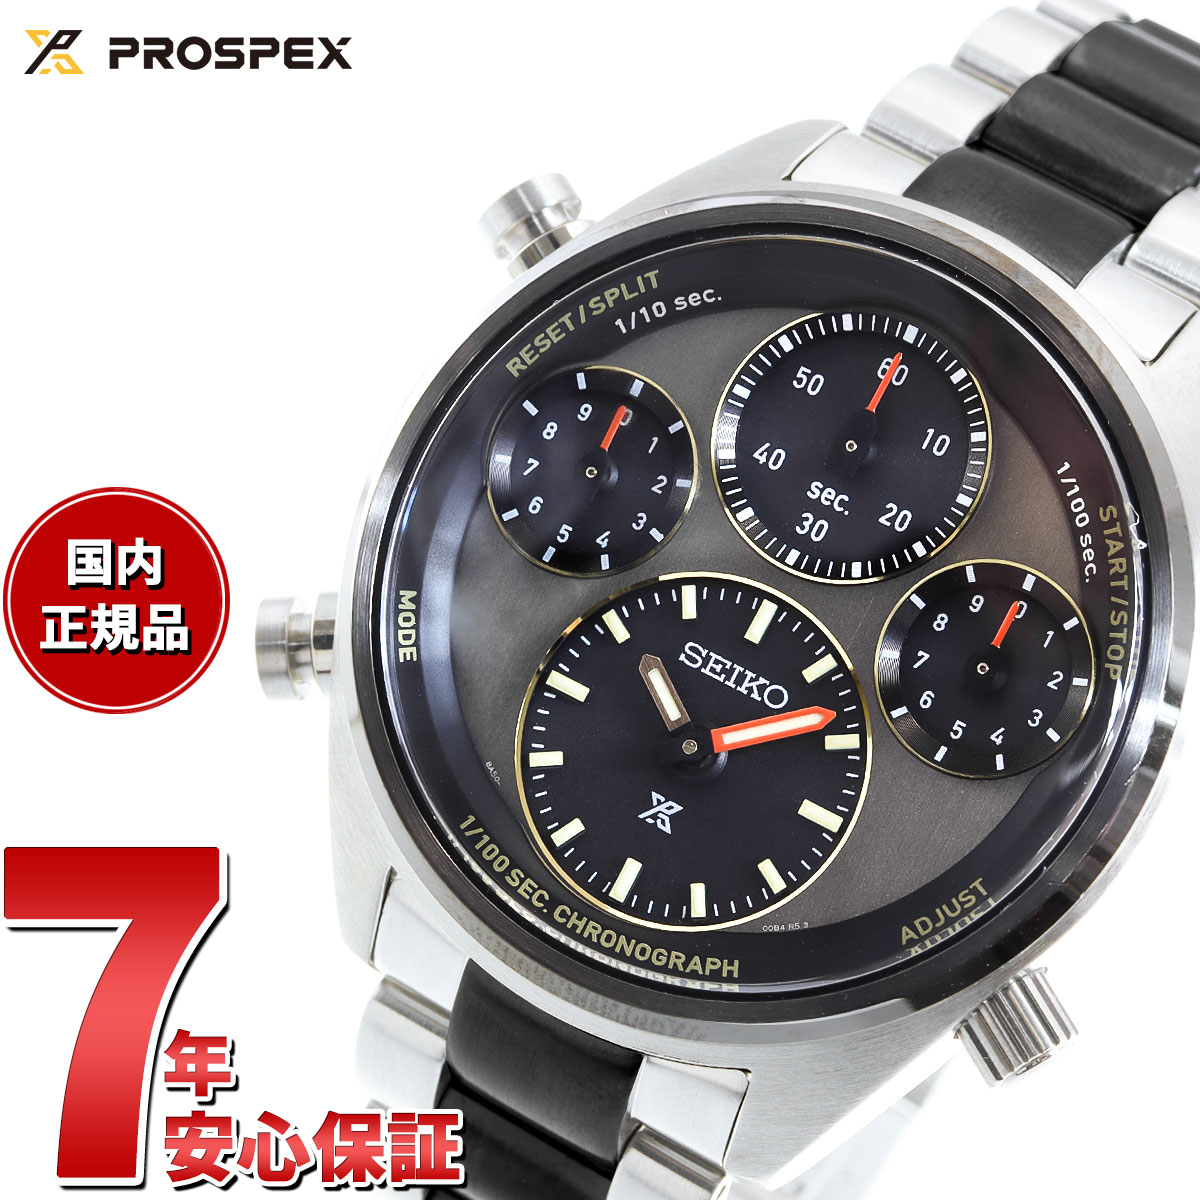 プロスペックス セイコー プロスペックス SBER005 スピードタイマー ソーラー クロノグラフ メンズ 復刻 限定モデル 腕時計 SEIKO PROSPEX SPEEDTIMER